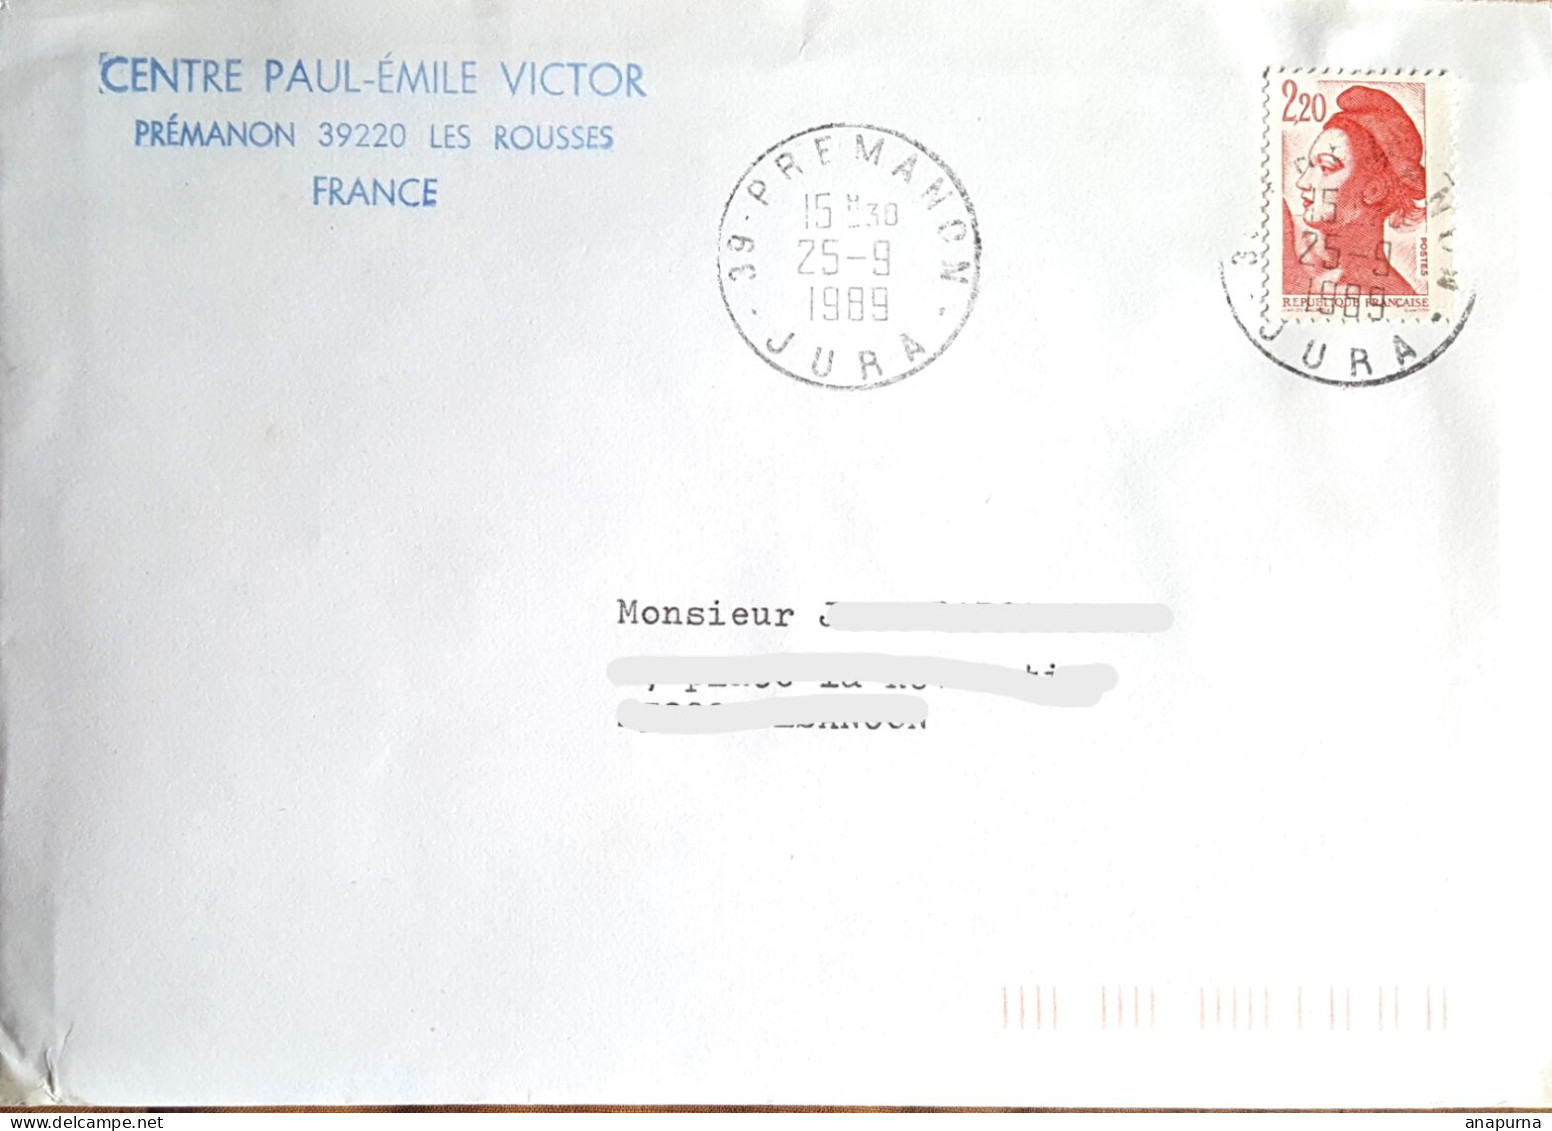 Centre Paul Emile Victor, Texte De Pierre Marc Sur La Venue De PEV En 89, Dessin De PEV, EPF - Polarforscher & Promis